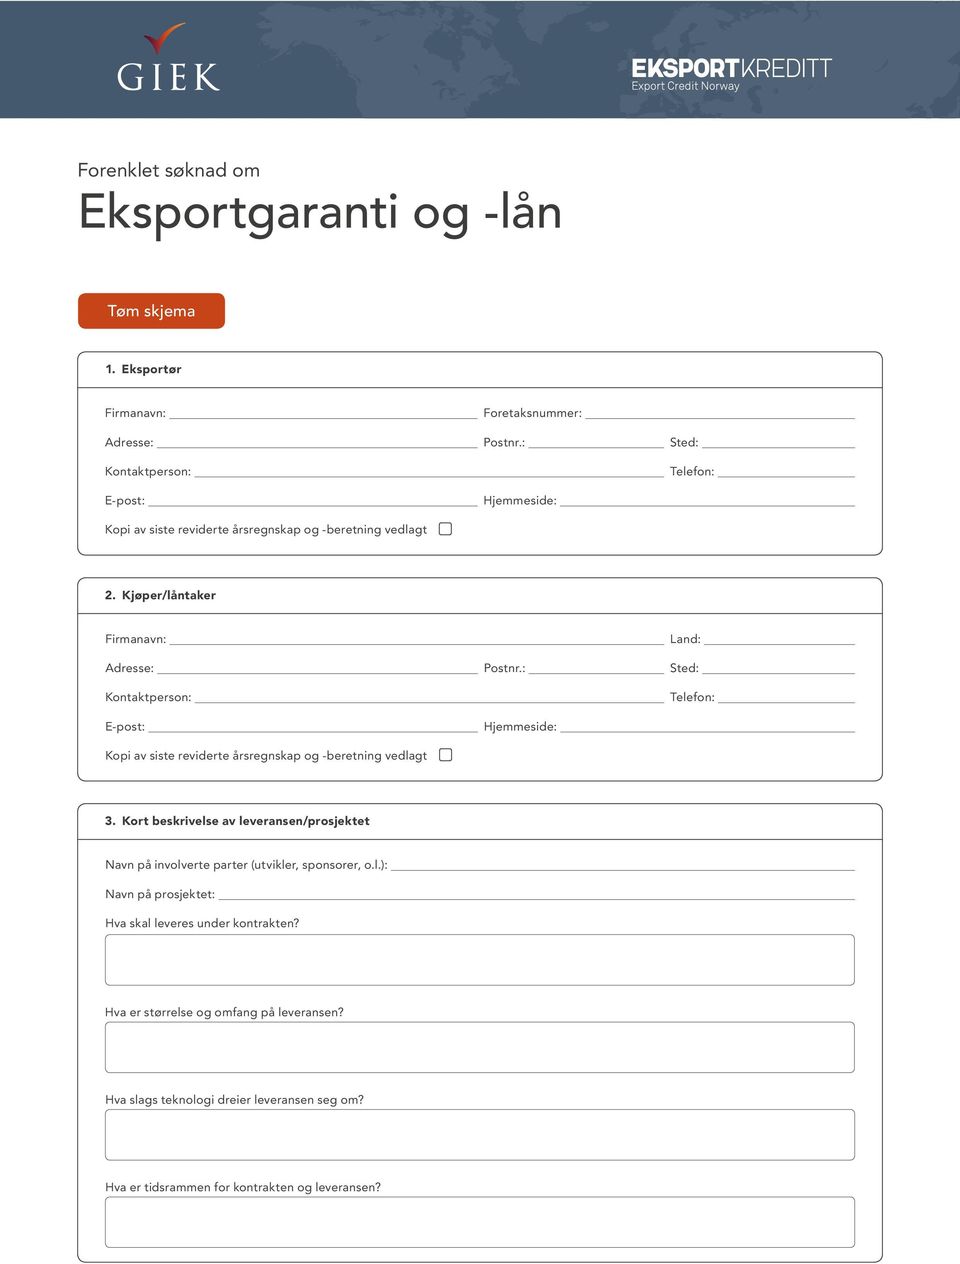 : Sted: Hjemmeside: Kopi av siste reviderte årsregnskap og -beretning vedlagt 3.